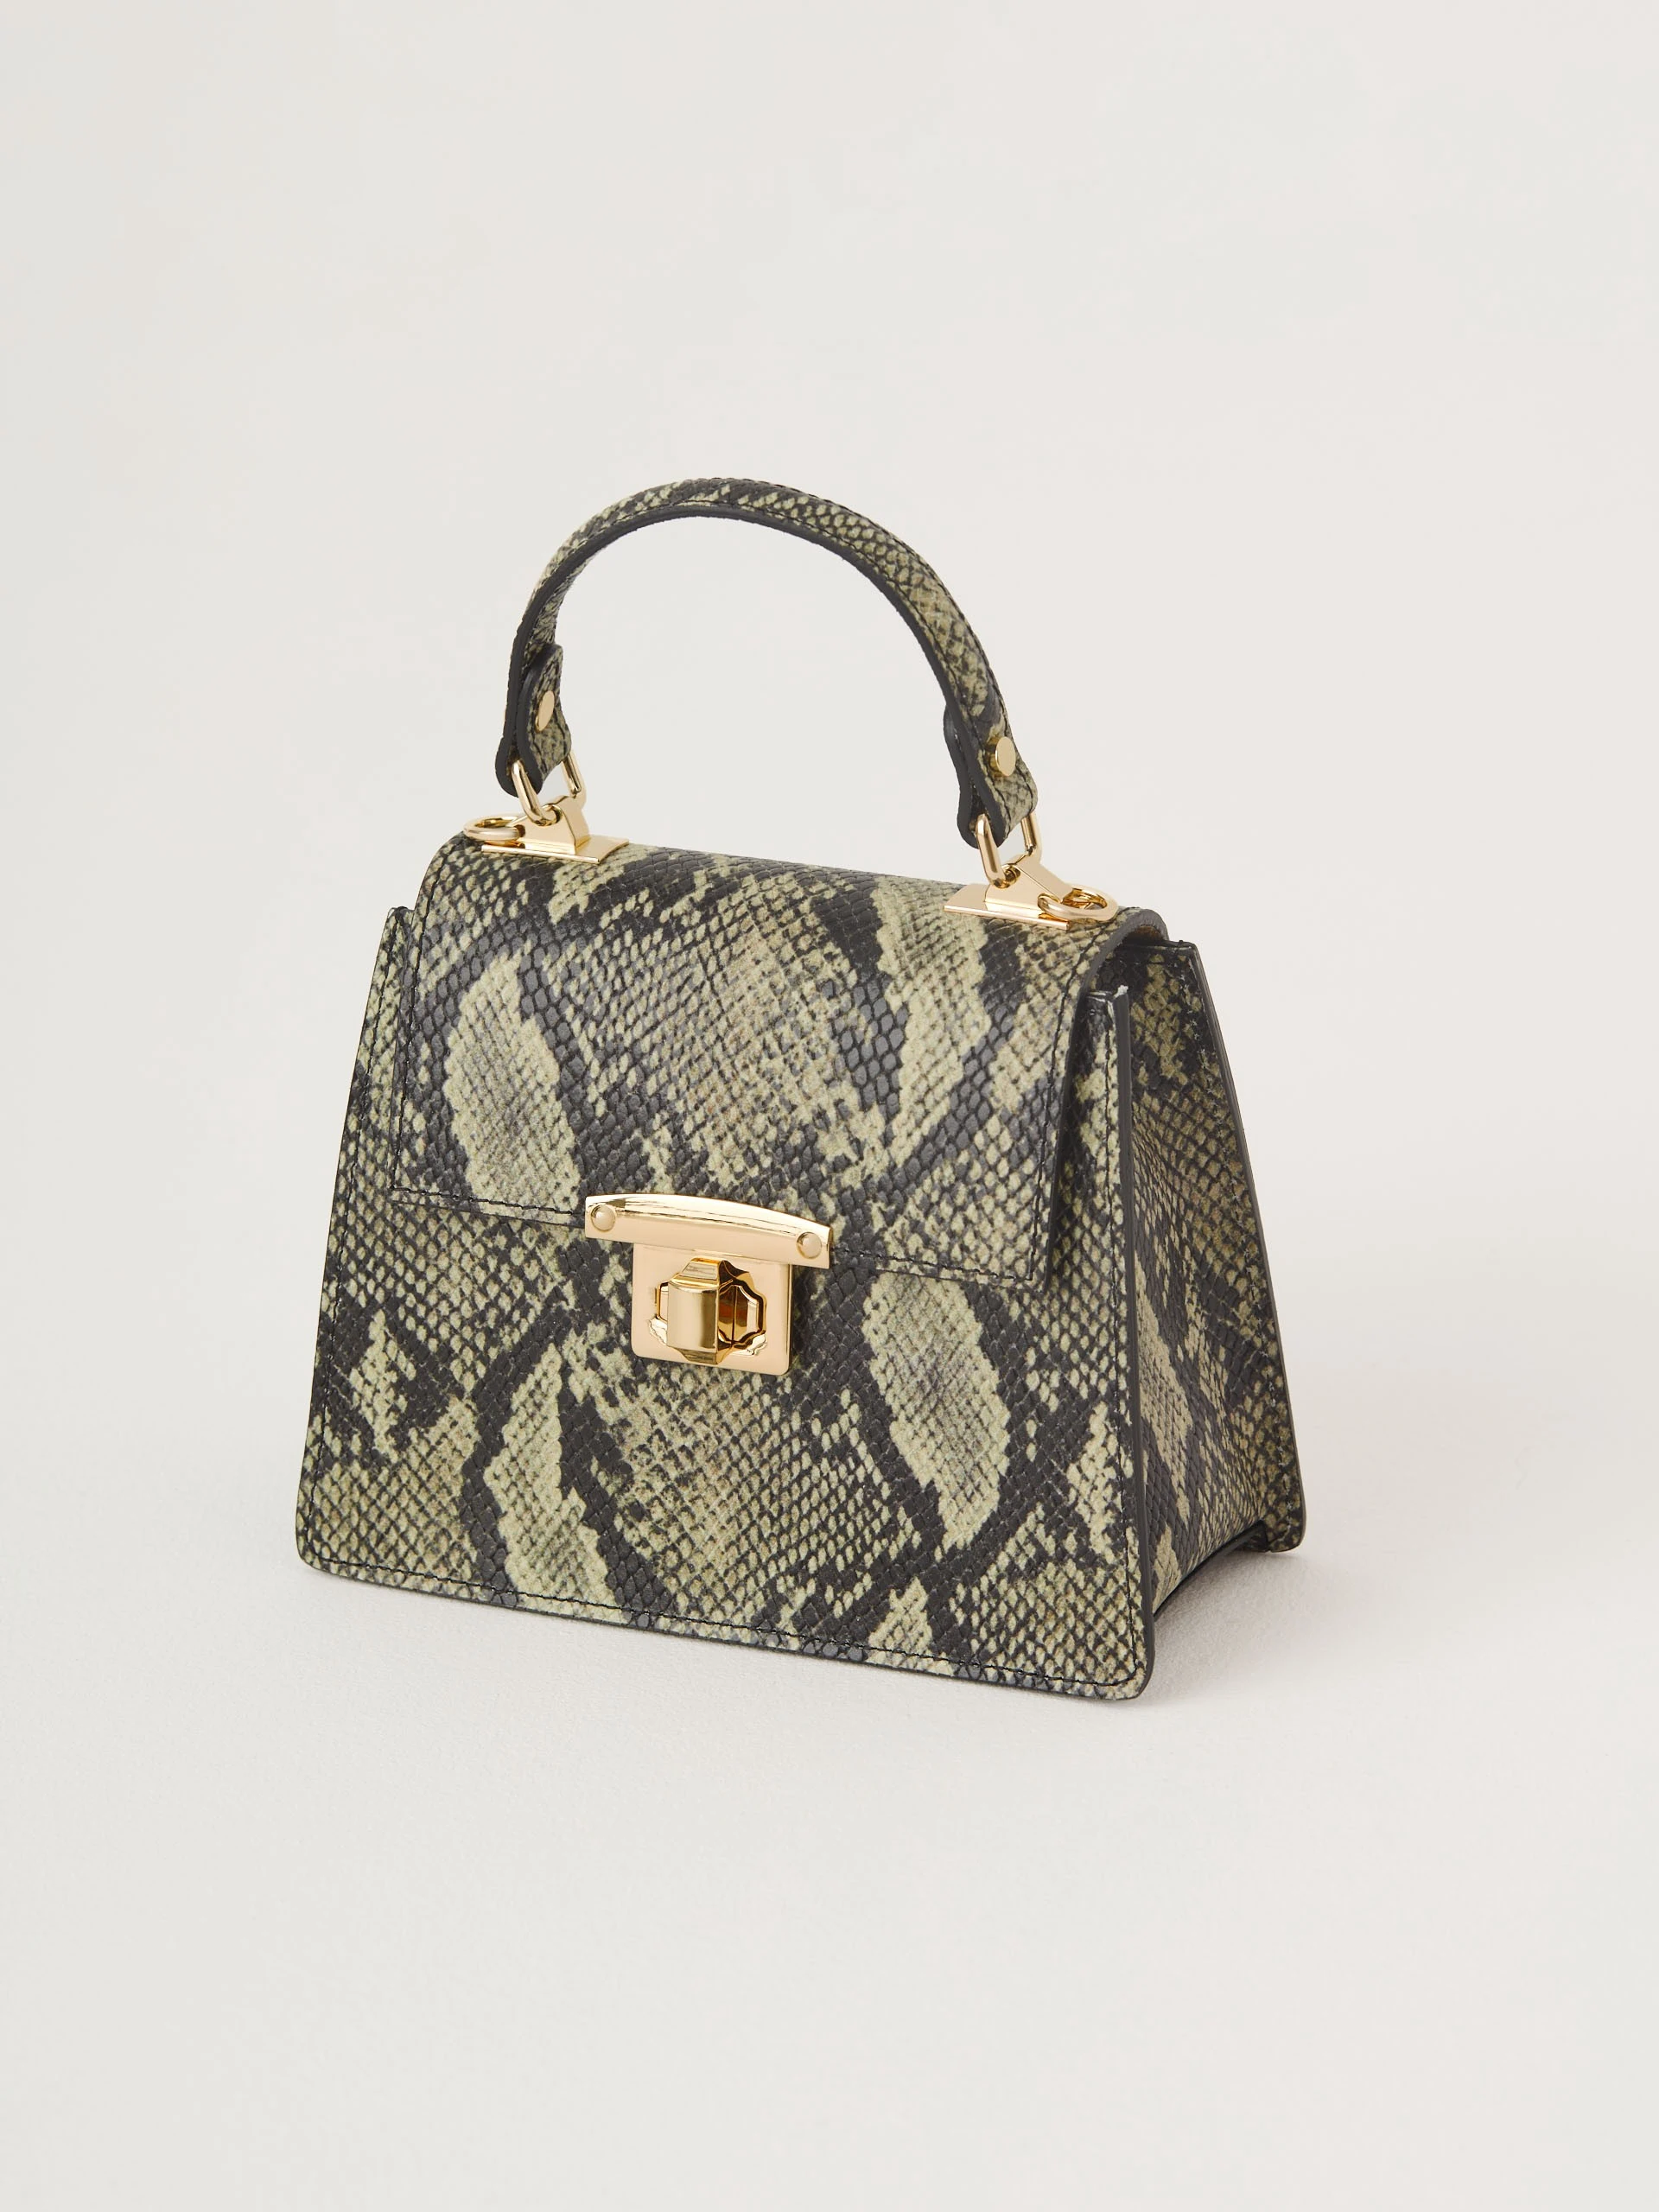 Animal pattern handbag